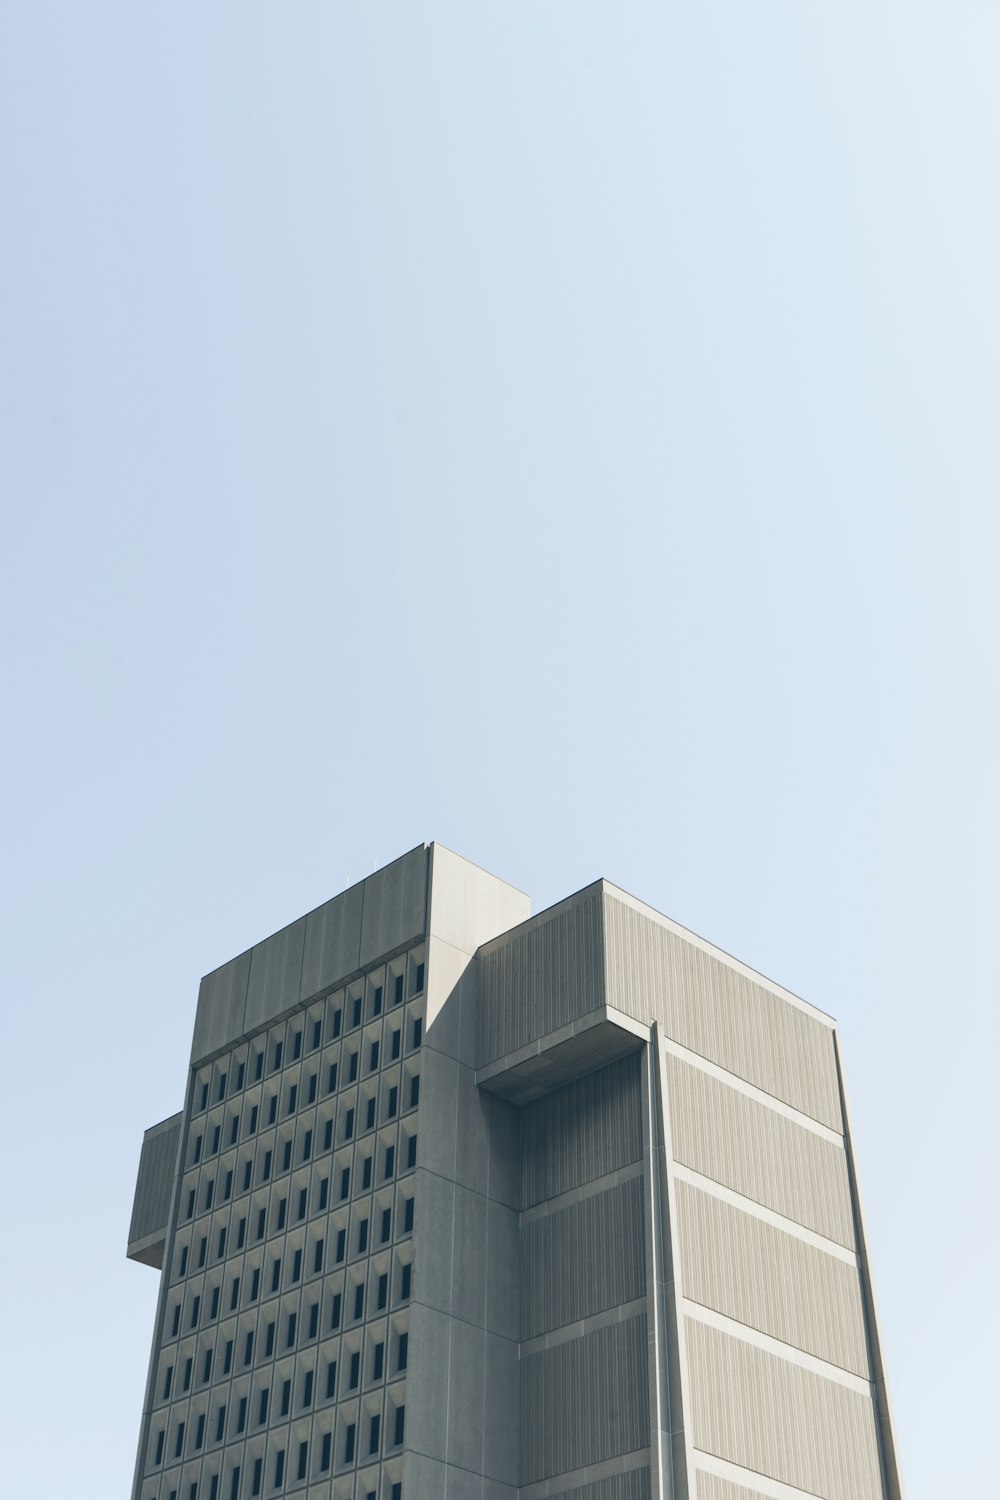 Photographie en contre-plongée d’un bâtiment gris